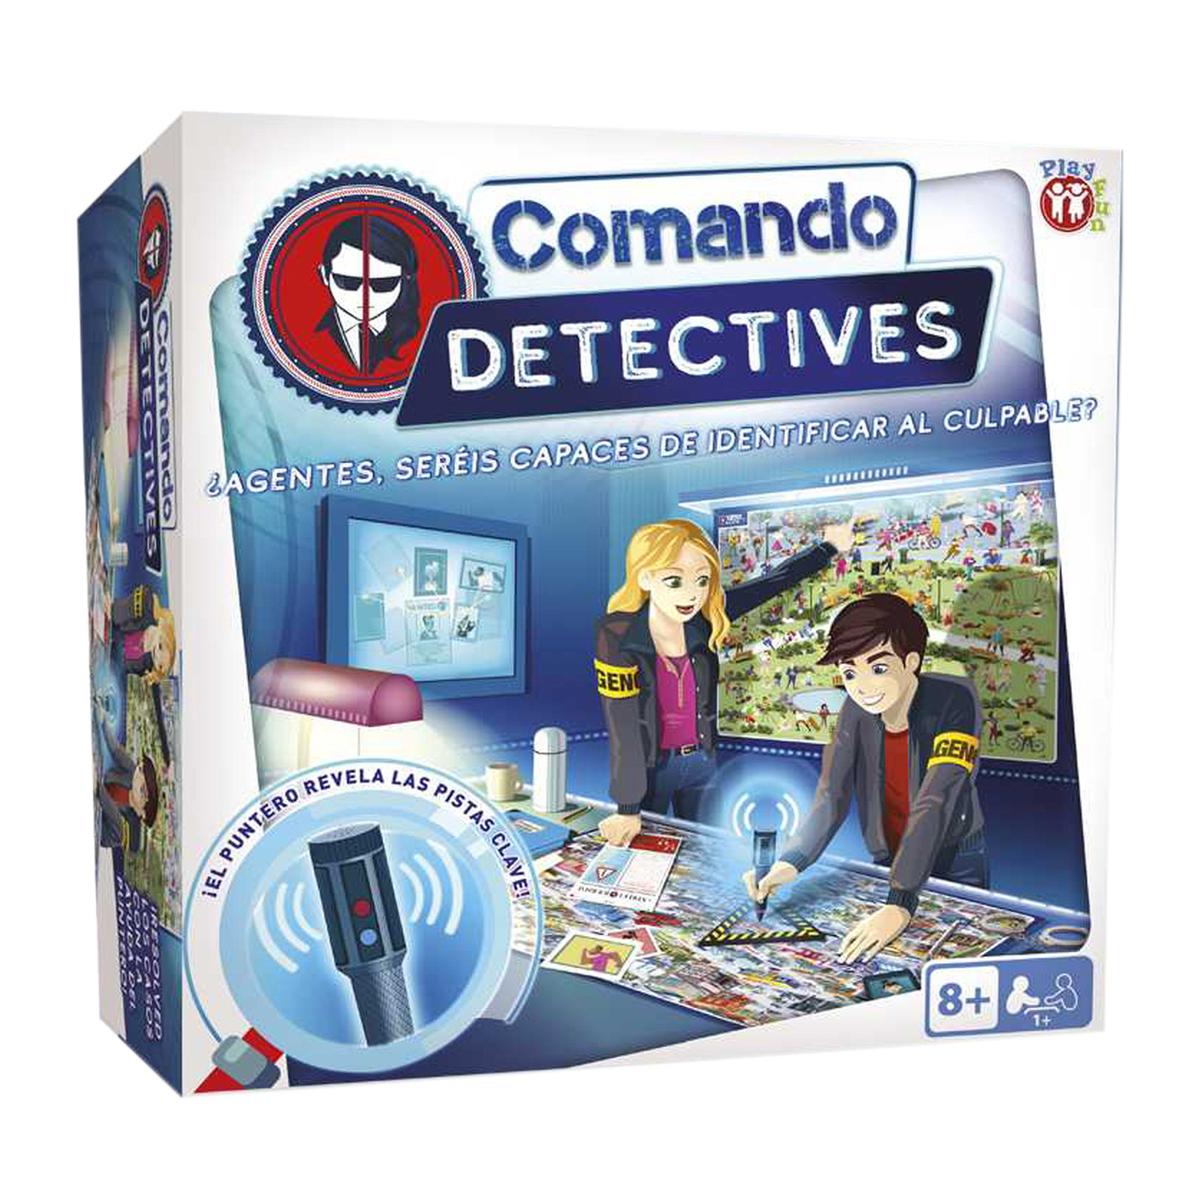 Comando Detectives | IMC Toys | Toys"R"Us España